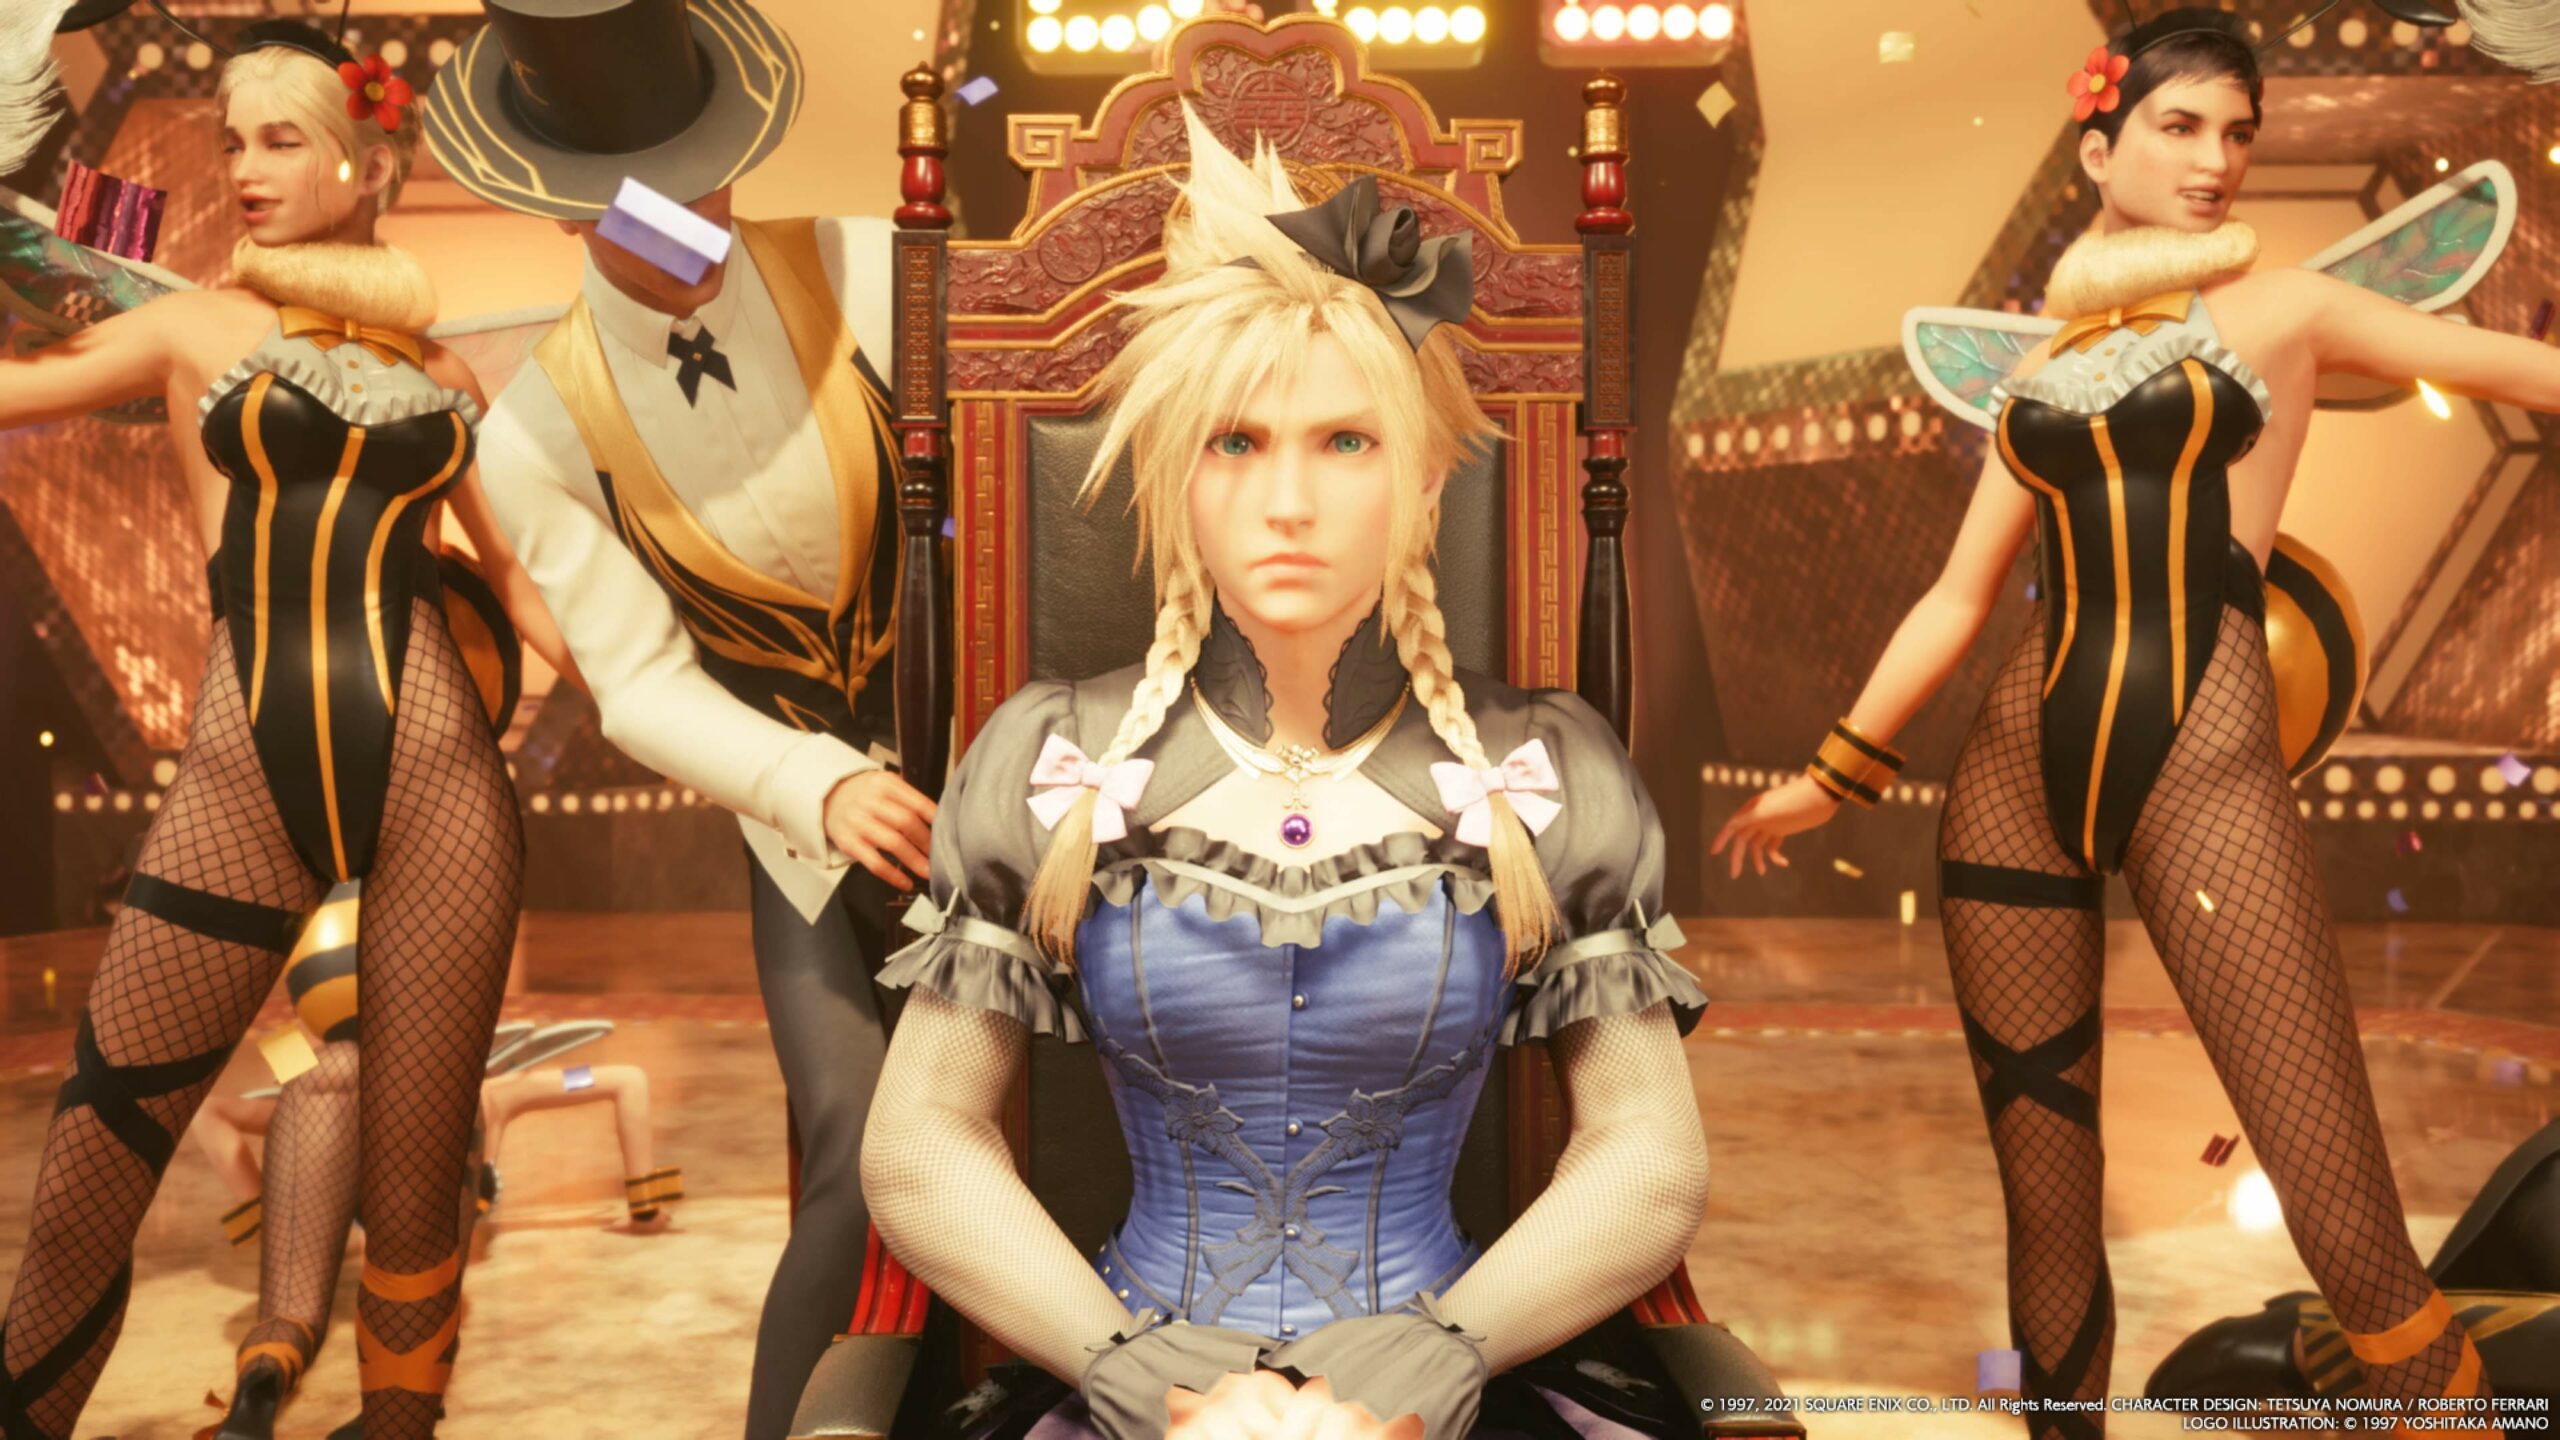 #Final Fantasy VII Remake und die „Gender-freie Perspektive“ des Honigtöpfchens